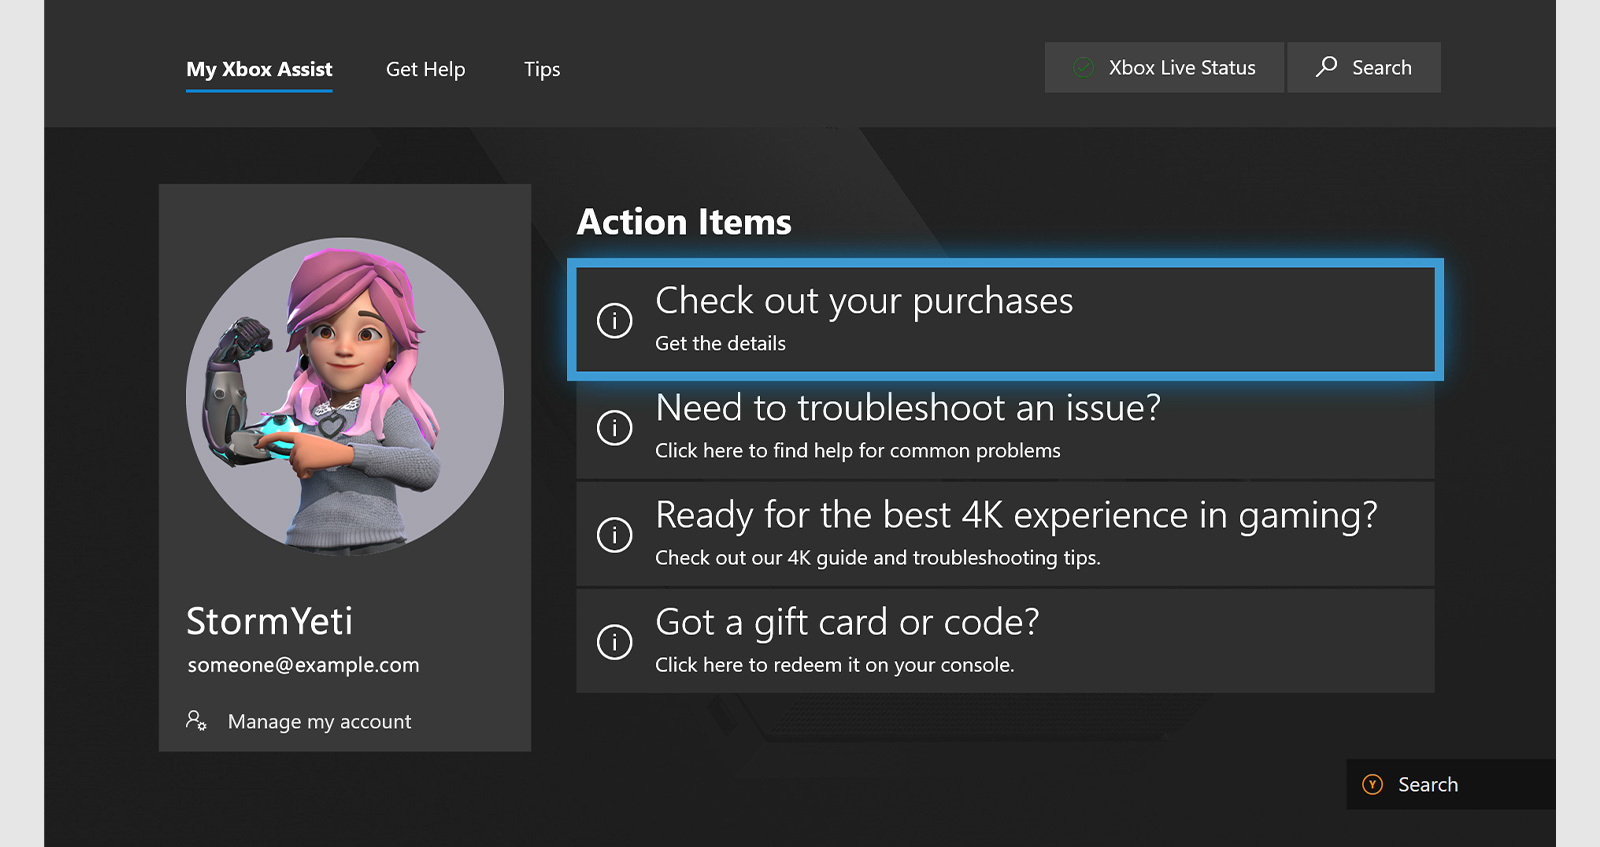 Une capture d’écran montrant l’interface utilisateur du support de l’Assistant Xbox  Les éléments d’action comprennent 4 options : la vérification des achats, la résolution des problèmes, la préparation à la 4K et l’utilisation d’un code ou d’une carte cadeau.